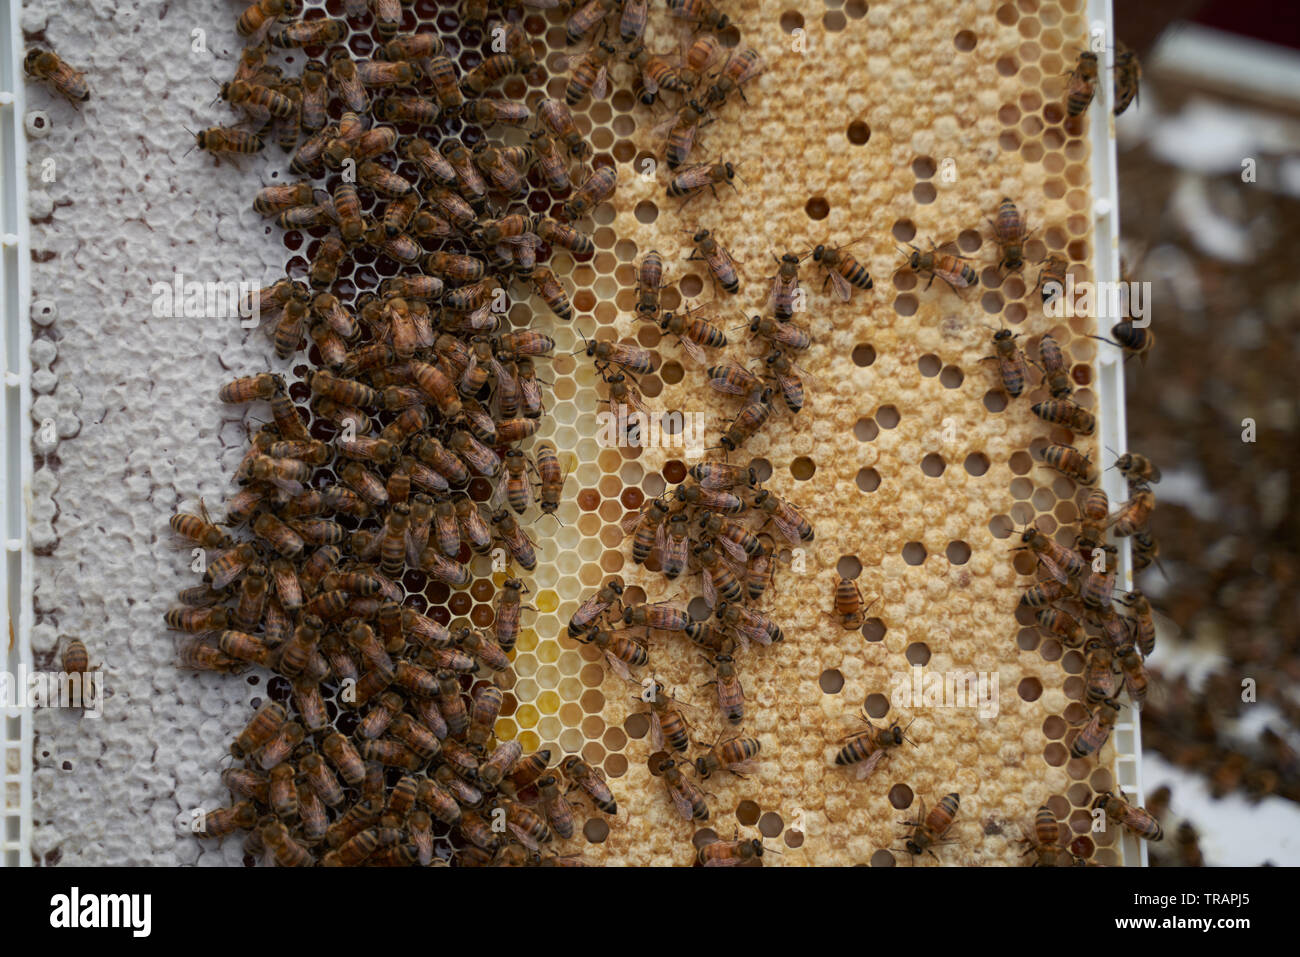 Bienen auf einen Rahmen. Die weißen Zellen unter den gelben sind jedoch Larven Bienen. Urban beeking hat viel populärer geworden in den letzten Jahren. Stockfoto